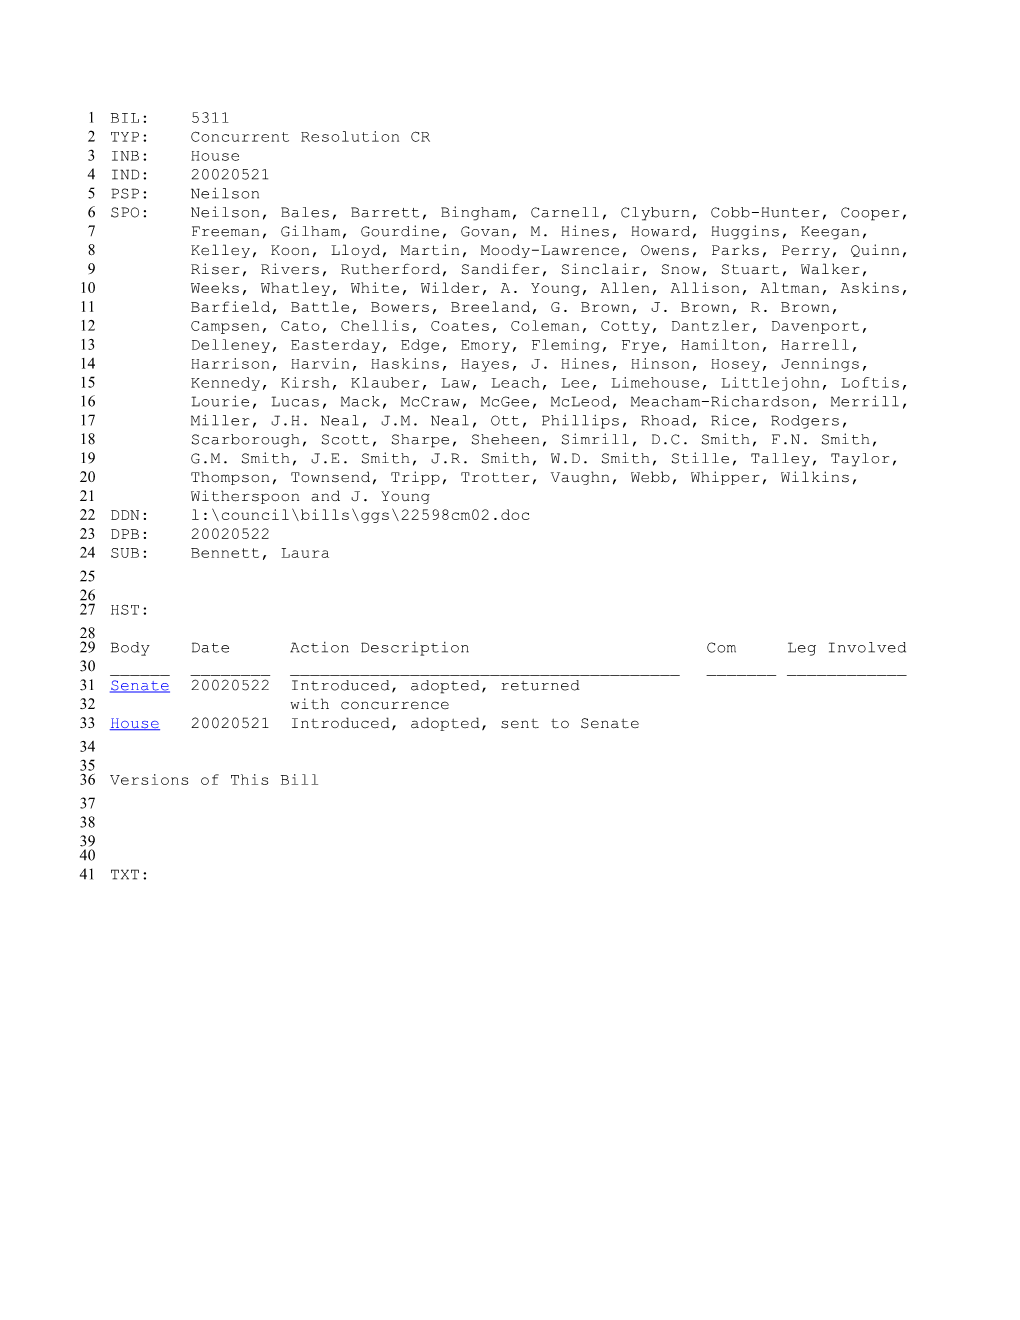 2001-2002 Bill 5311: Bennett, Laura - South Carolina Legislature Online